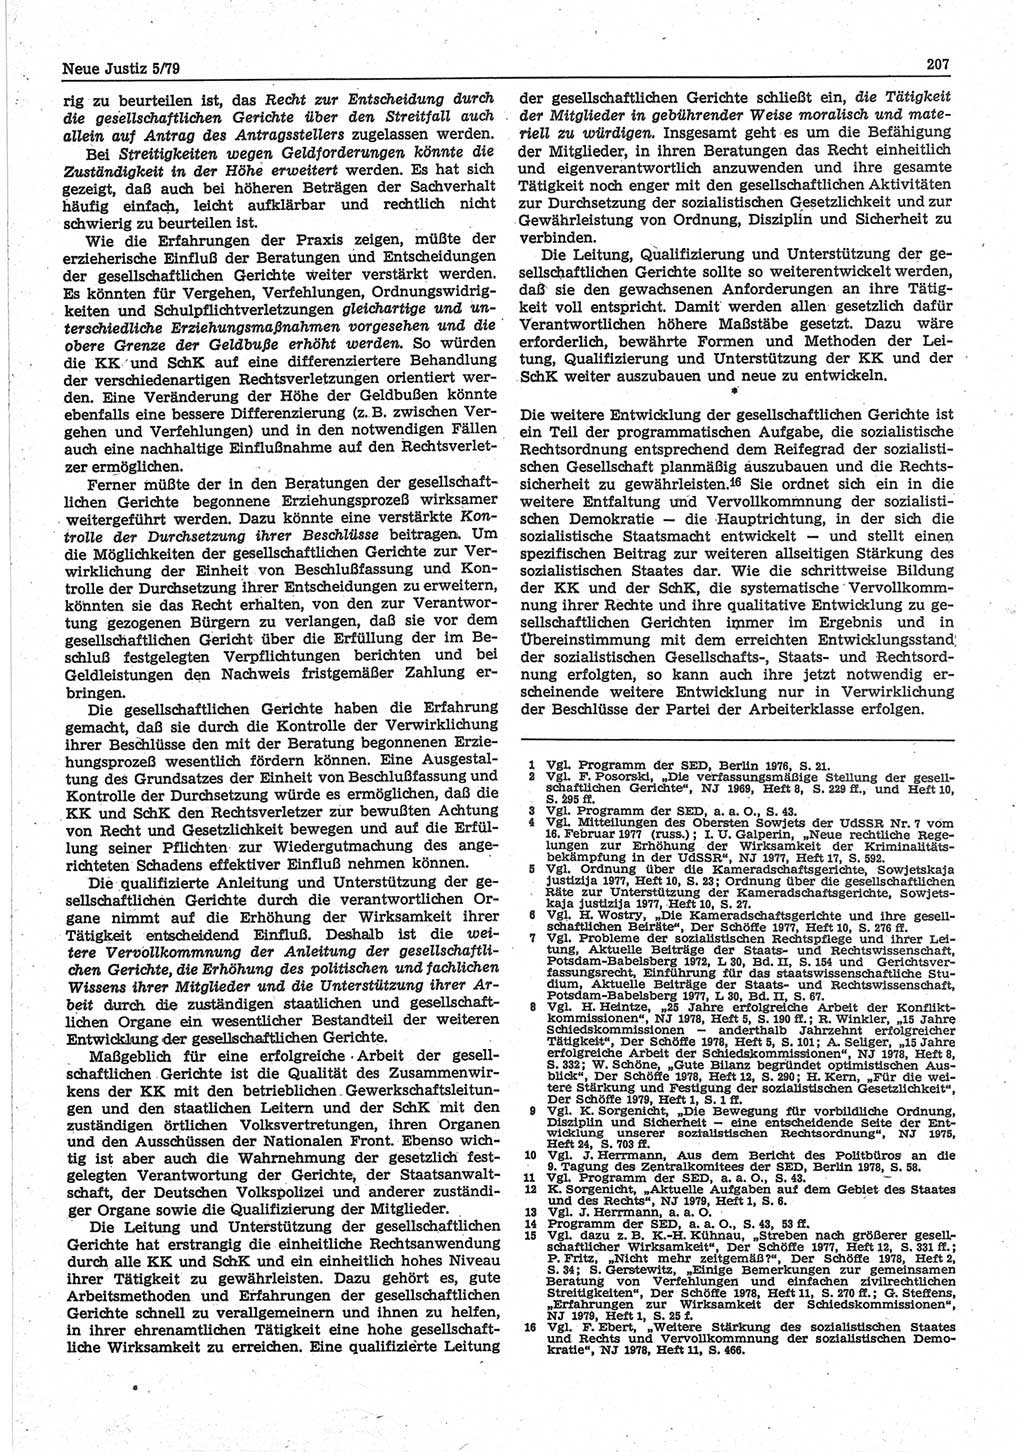 Neue Justiz (NJ), Zeitschrift für sozialistisches Recht und Gesetzlichkeit [Deutsche Demokratische Republik (DDR)], 33. Jahrgang 1979, Seite 207 (NJ DDR 1979, S. 207)